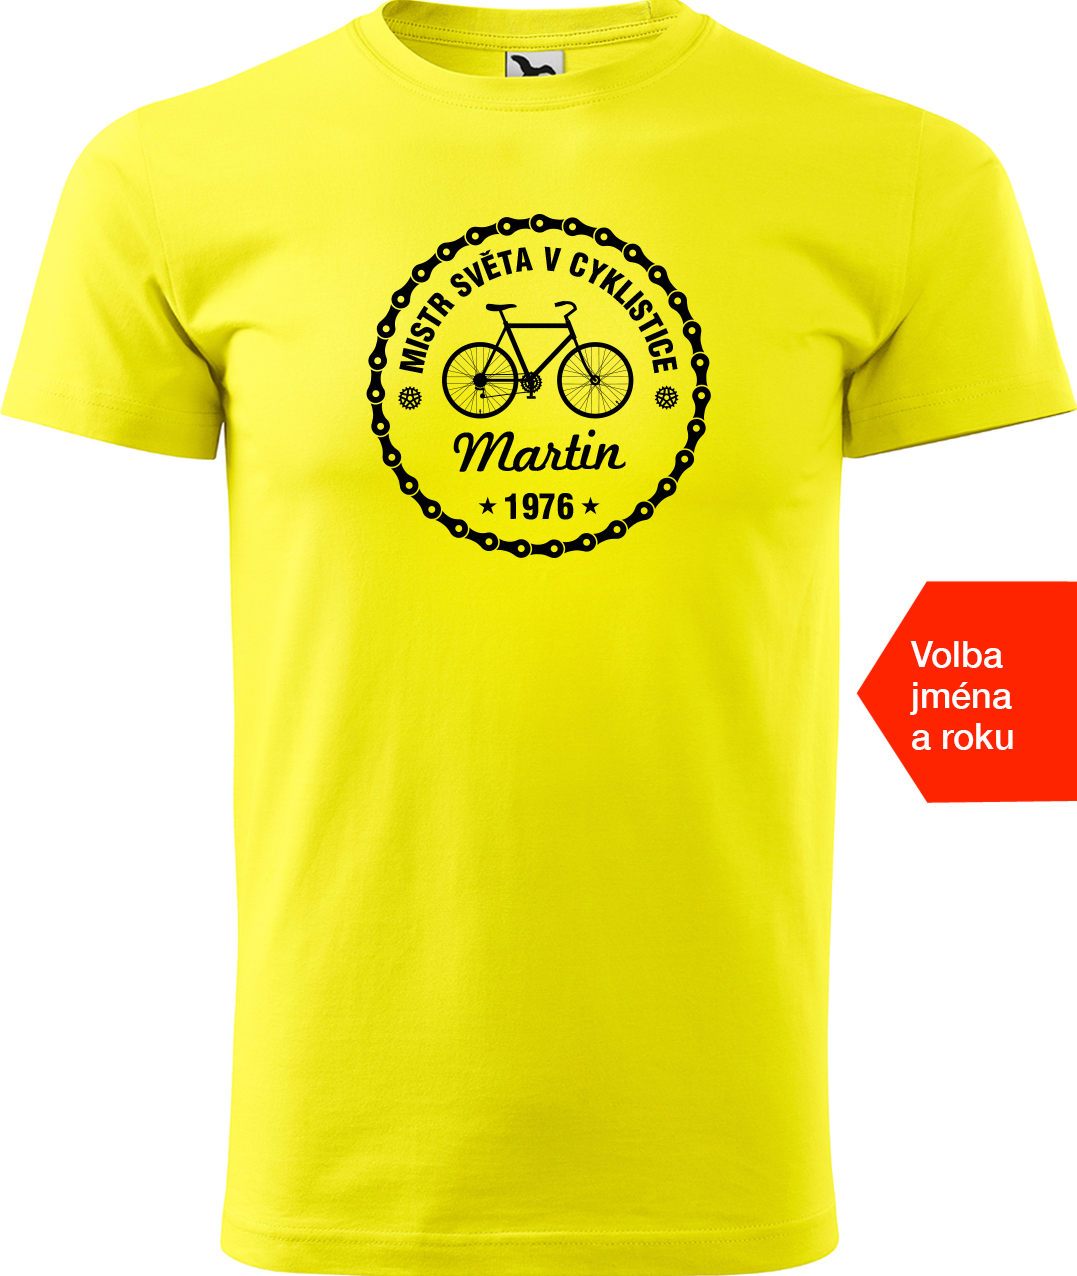 Pánské tričko pro cyklistu s věkem/rokem narození - Mistr světa v cyklistice Velikost: L, Barva: Žlutá (04)